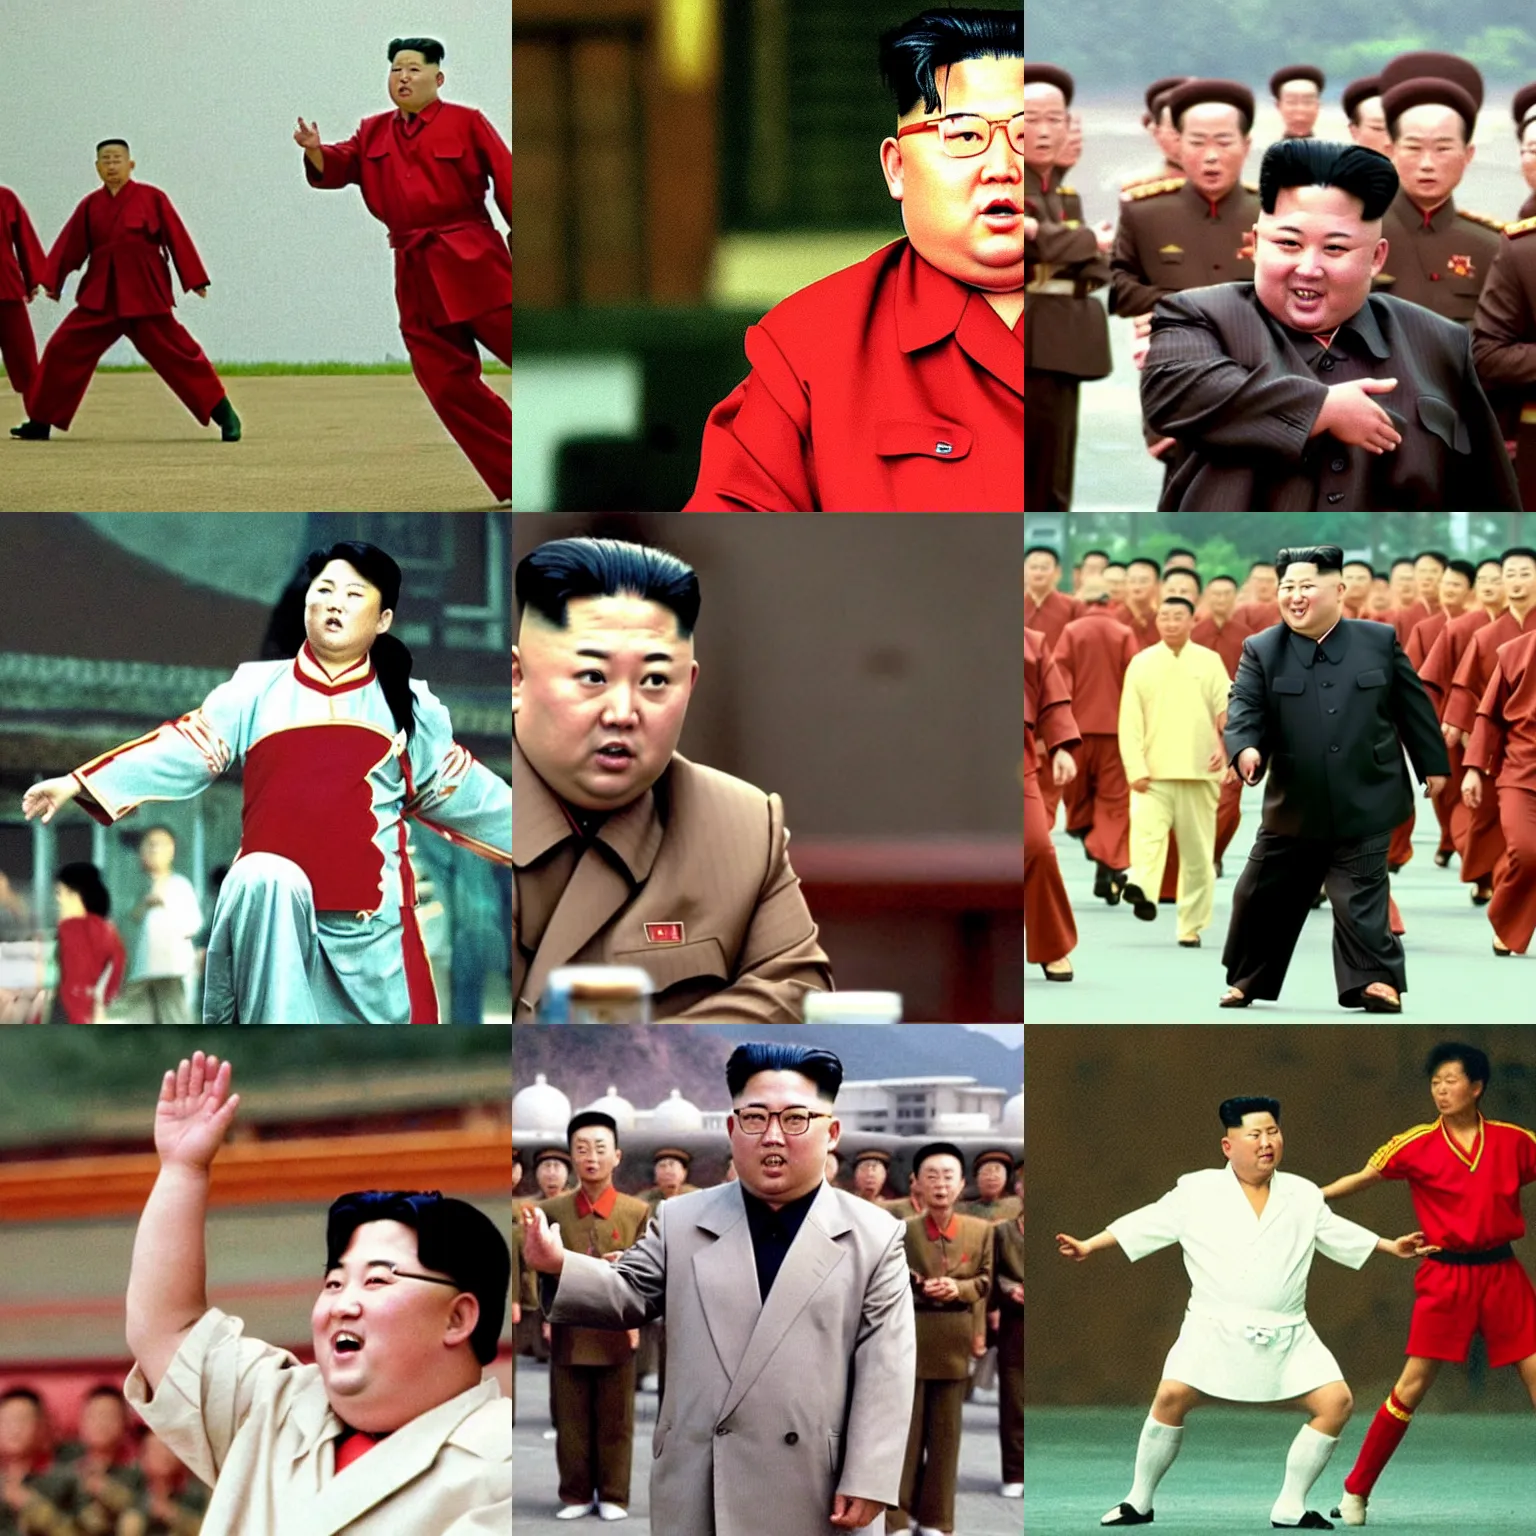 Prompt: Movie still of Kim Jong-Un in Shaolin Soccer